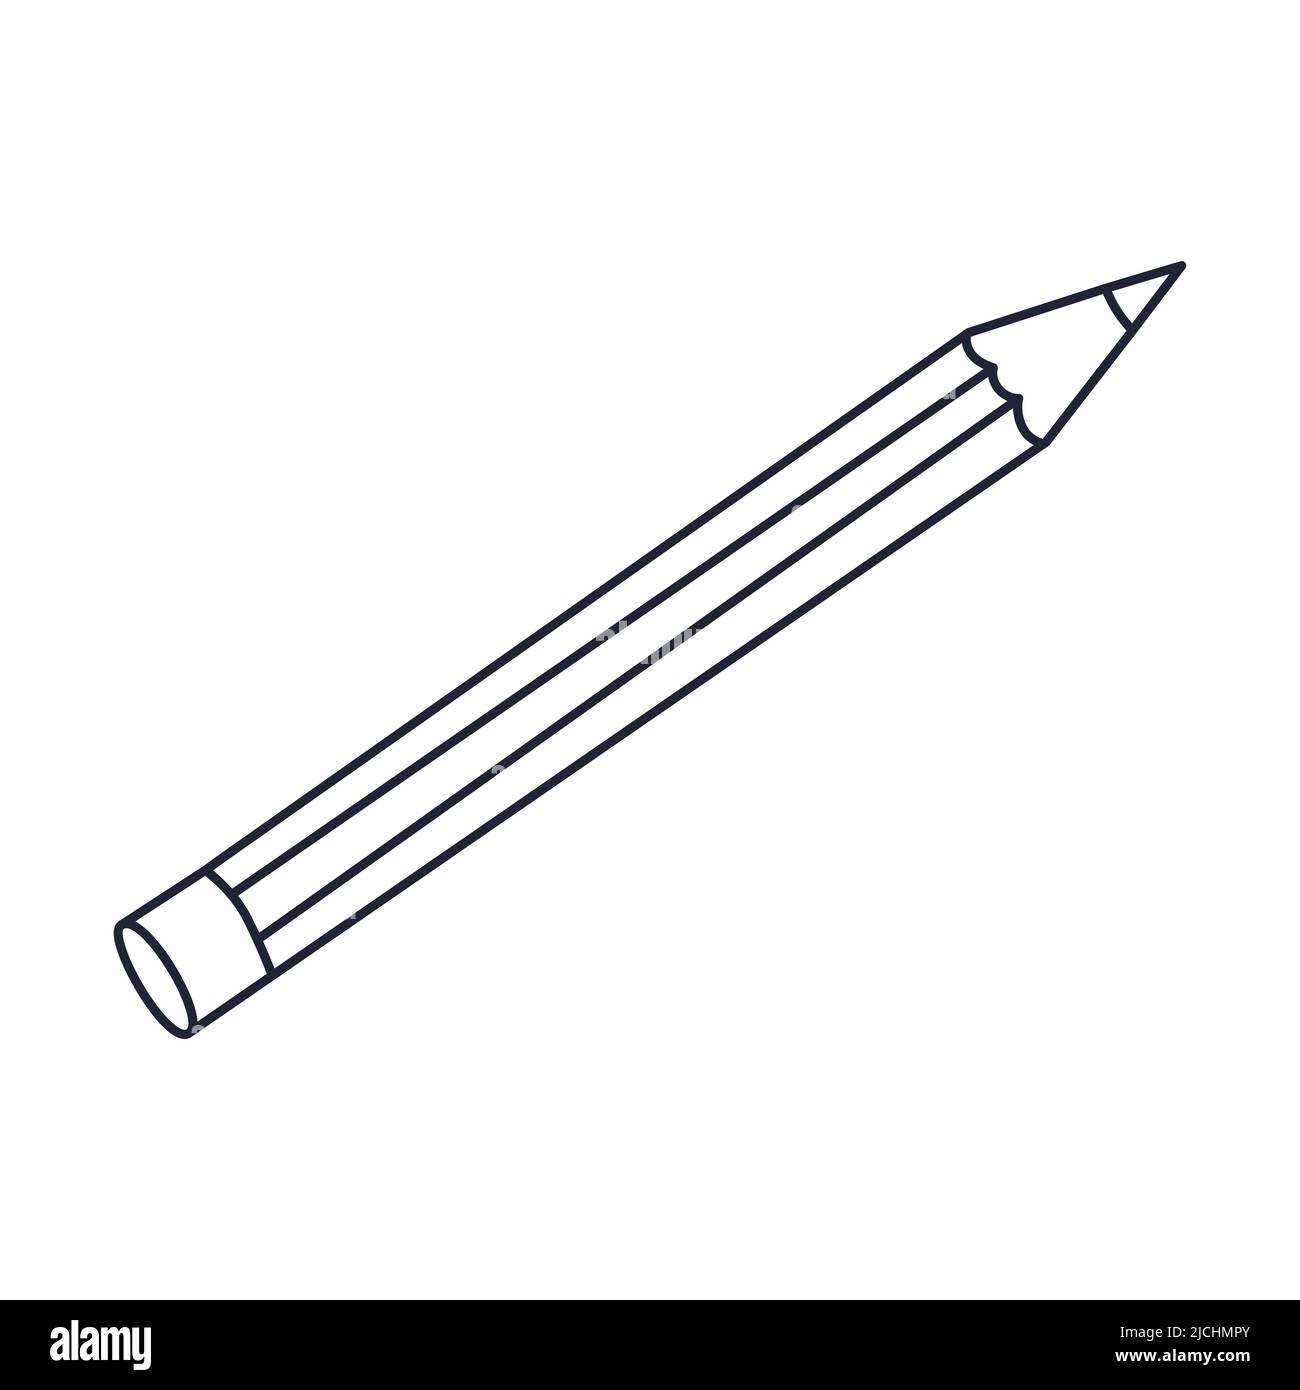 Una semplice matita di legno con gomma. Cancelleria, forniture per ufficio. Delineare il doodle. Illustrazione vettoriale in bianco e nero isolata su sfondo bianco Illustrazione Vettoriale